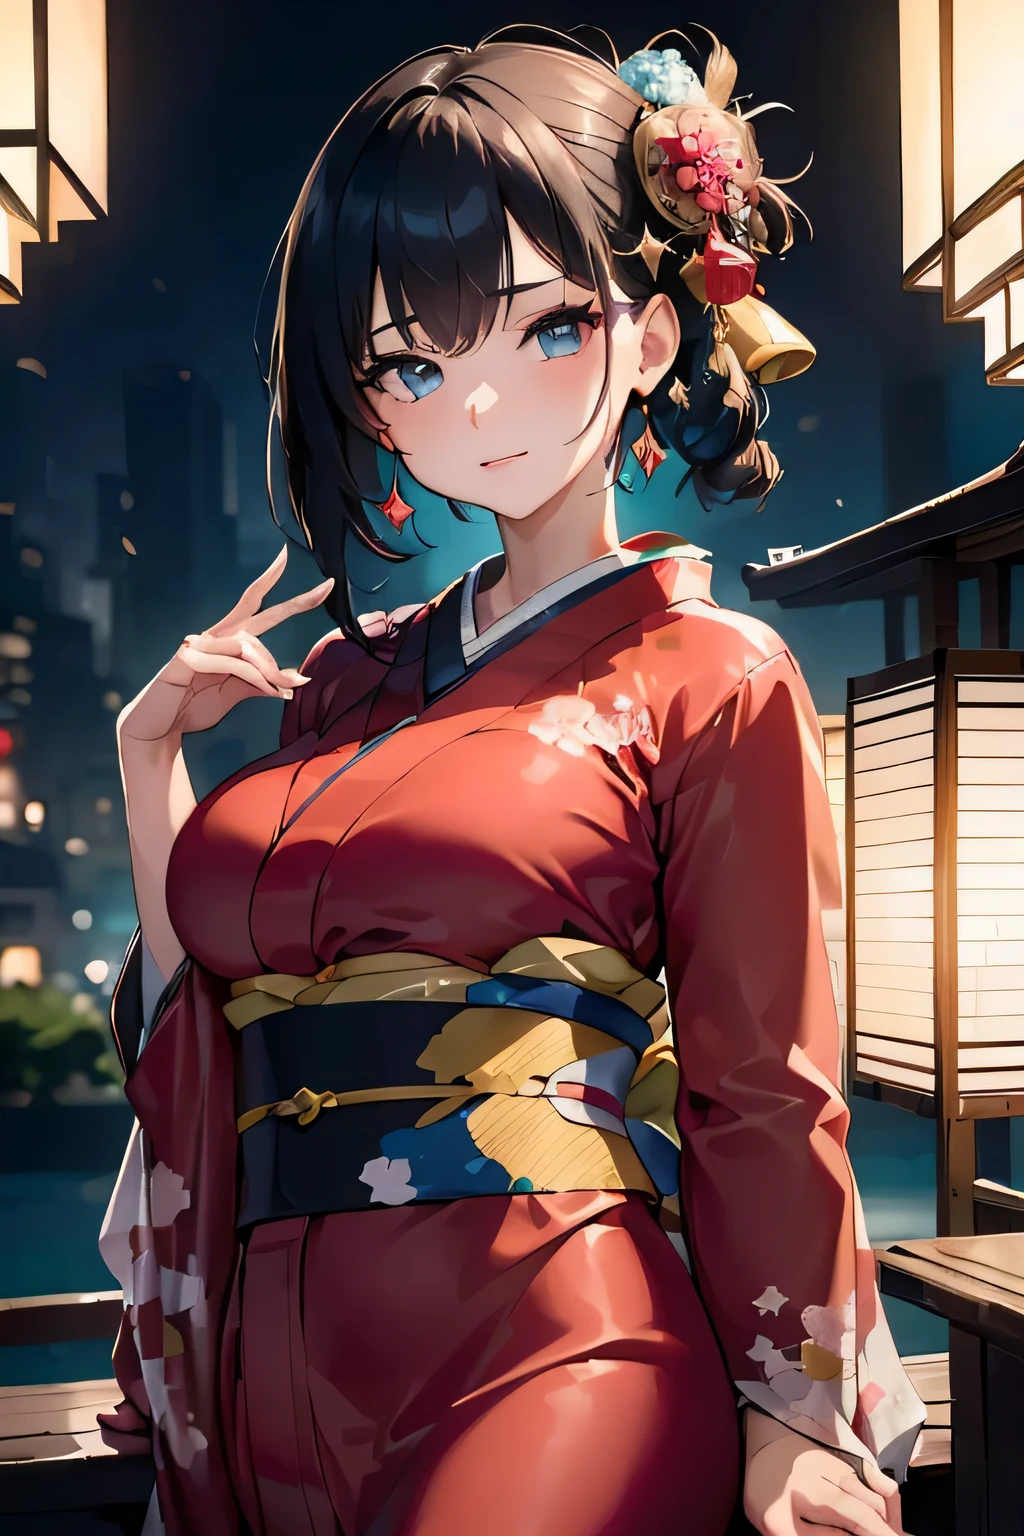 (((Gorgeoucortesã kimono:1.7))),(Linda mulher madura vestida de aristocrata&#39;cortesã),(((Uma cortesã chamativa e extravagante&#39;s costume:1.3))),(Frasco Glamouroso)(Lindo enfeite de cabelo floral),Lindo nó superior trançado floral,(Cabelo muito delicado e lindo,),(((Acentue seios maiores:1.3))),Fogos de artifício subindo para o céu tendo como pano de fundo a margem do rio à noite.、lindo rosto redondo,Recursos detalhados de roupas,Recursos detalhados do cabelo,características faciais detalhadas,olhando para a câmera,(ângulo dinâmico),(Pose dinâmica e sexy),luz cinematográfica,(Imagens de saída de resolução ultra-alta,Profundidade do limite escrito,detalhes intrincados,contraste de luz e sombra、O assunto parece tridimensional,) ,Câmera reflex de lente única, (realista:1.3),(Qualidade 8k,Estrutura facial anatomicamente correta,),(Arte Marítima 2.Modo 0:1.3),(Modo de imagem Ultra HD,)